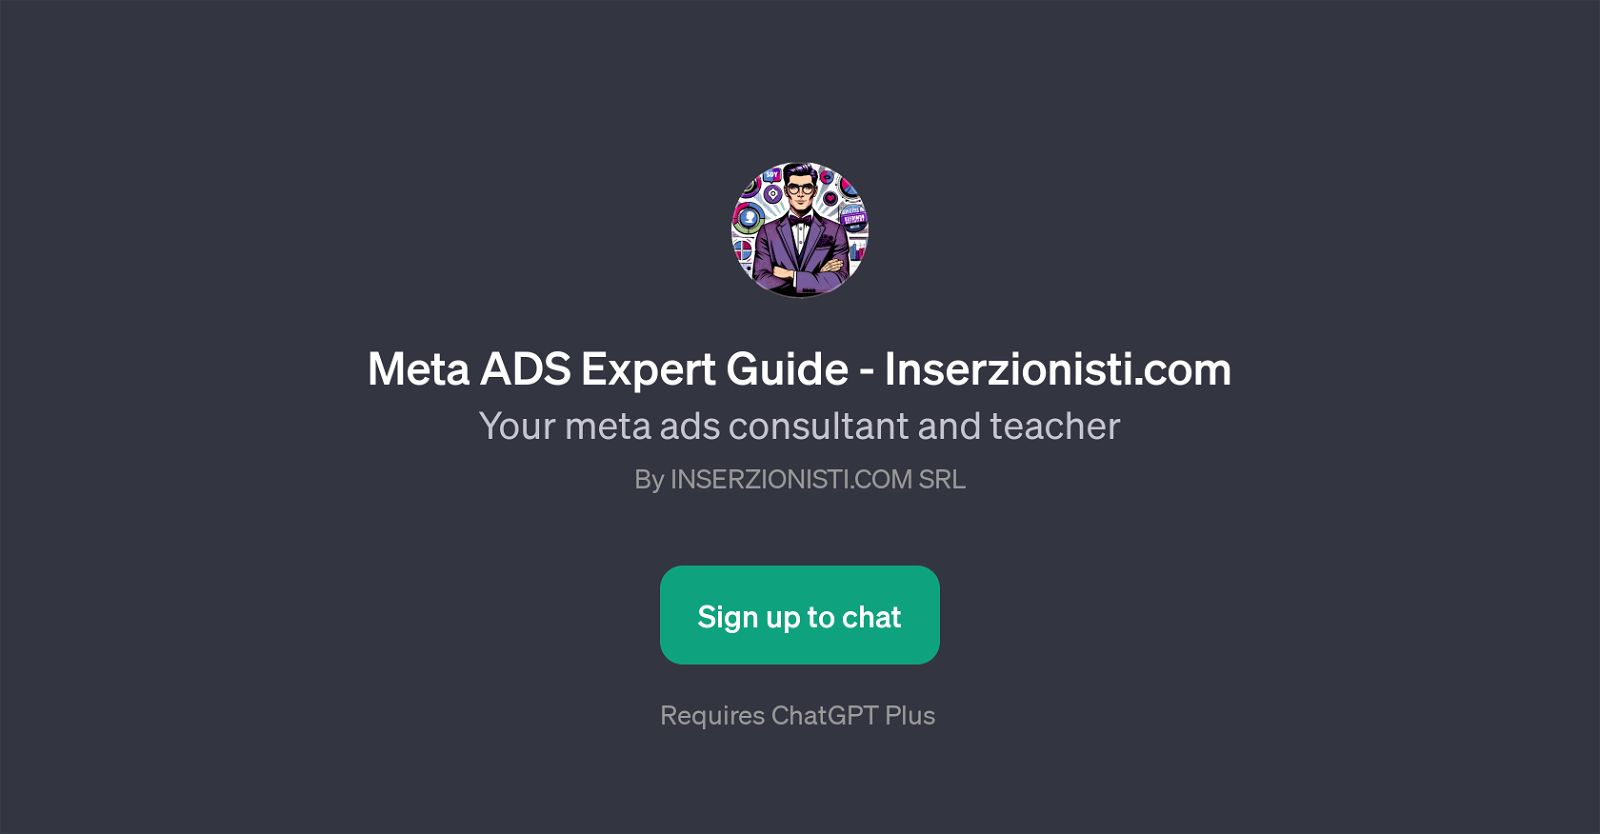 Meta ADS Expert Guide - Inserzionisti.com website